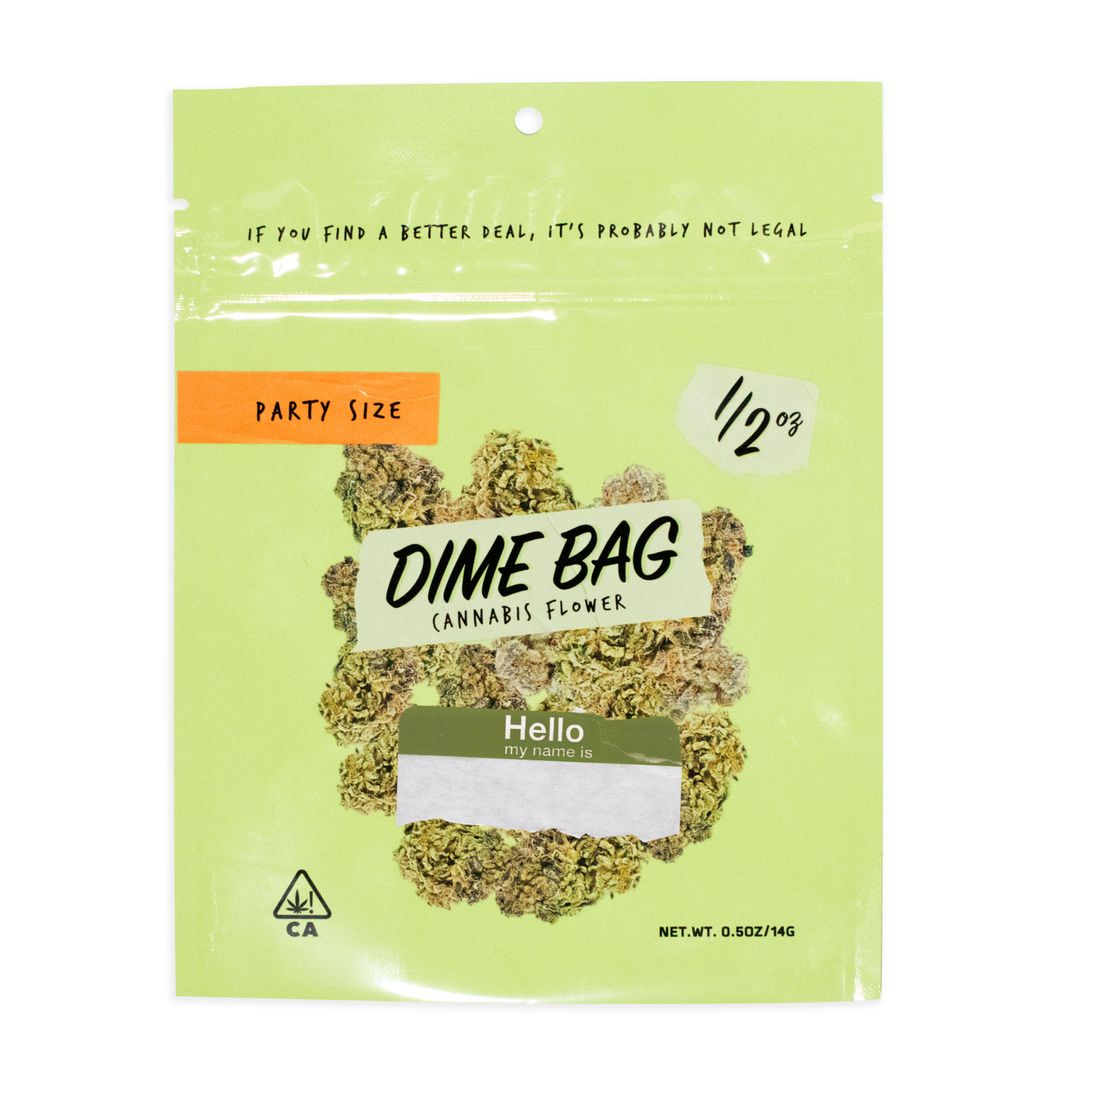 B. Dime Bag 14g Flower - Quality 7.5/10 - Grape Jelly